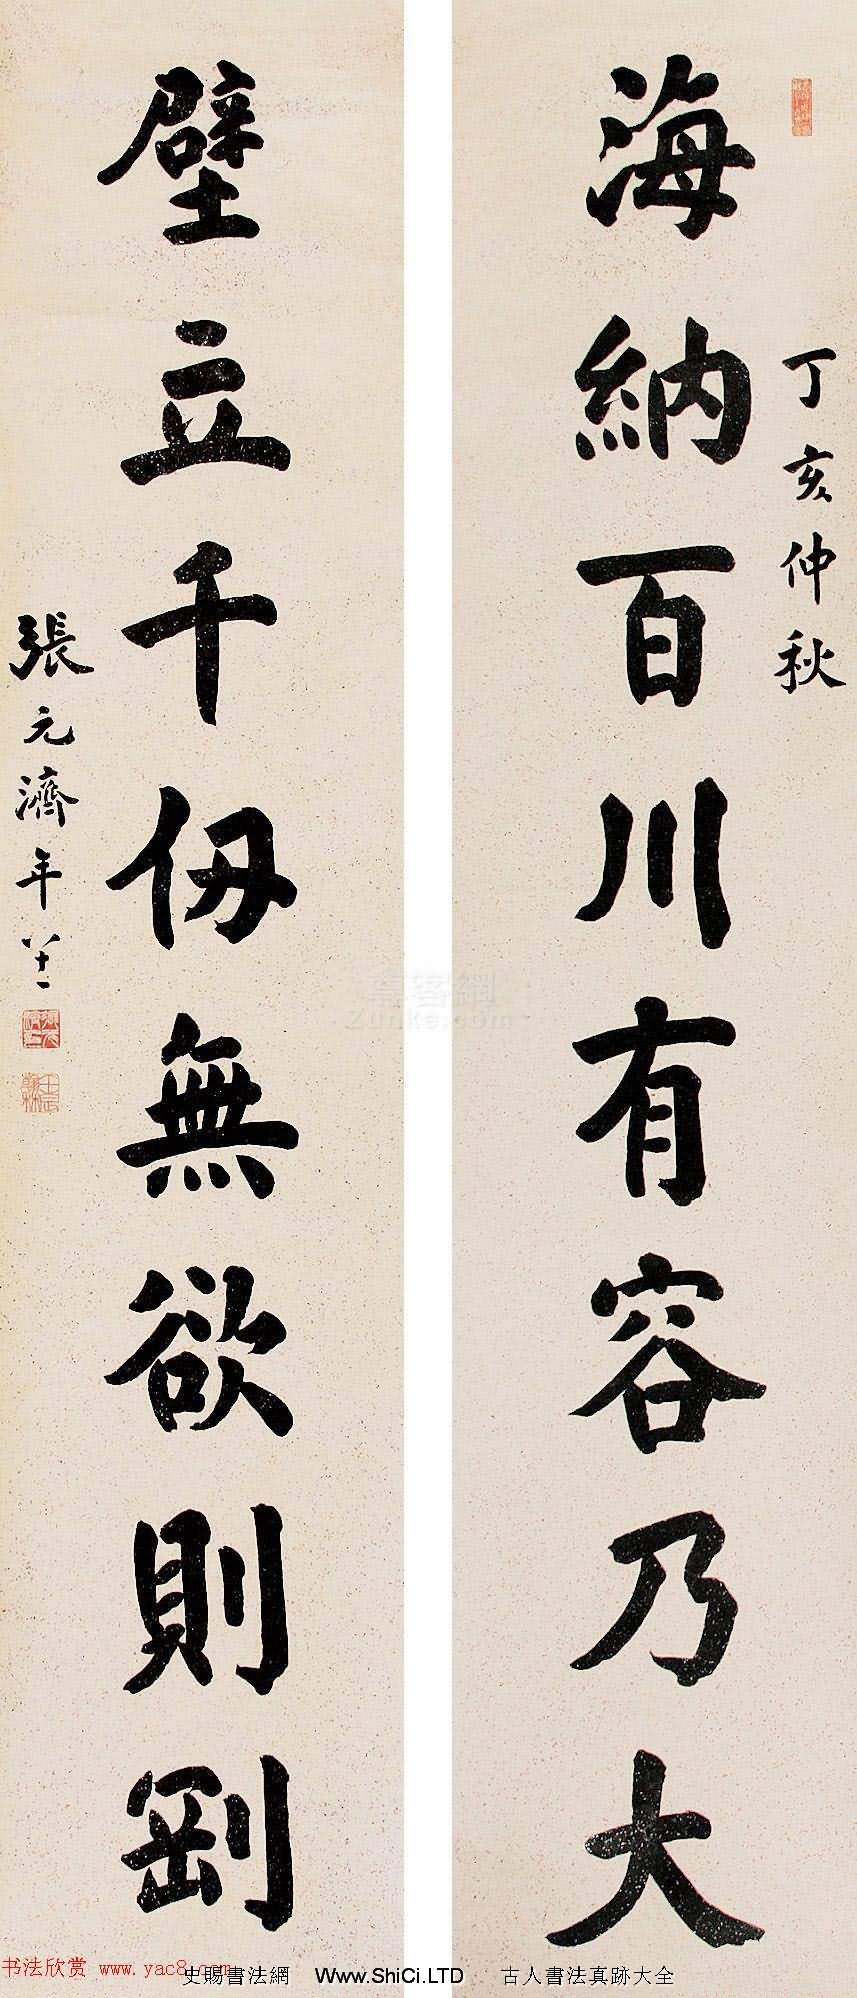 中國出版第一人張元濟書法作品選刊